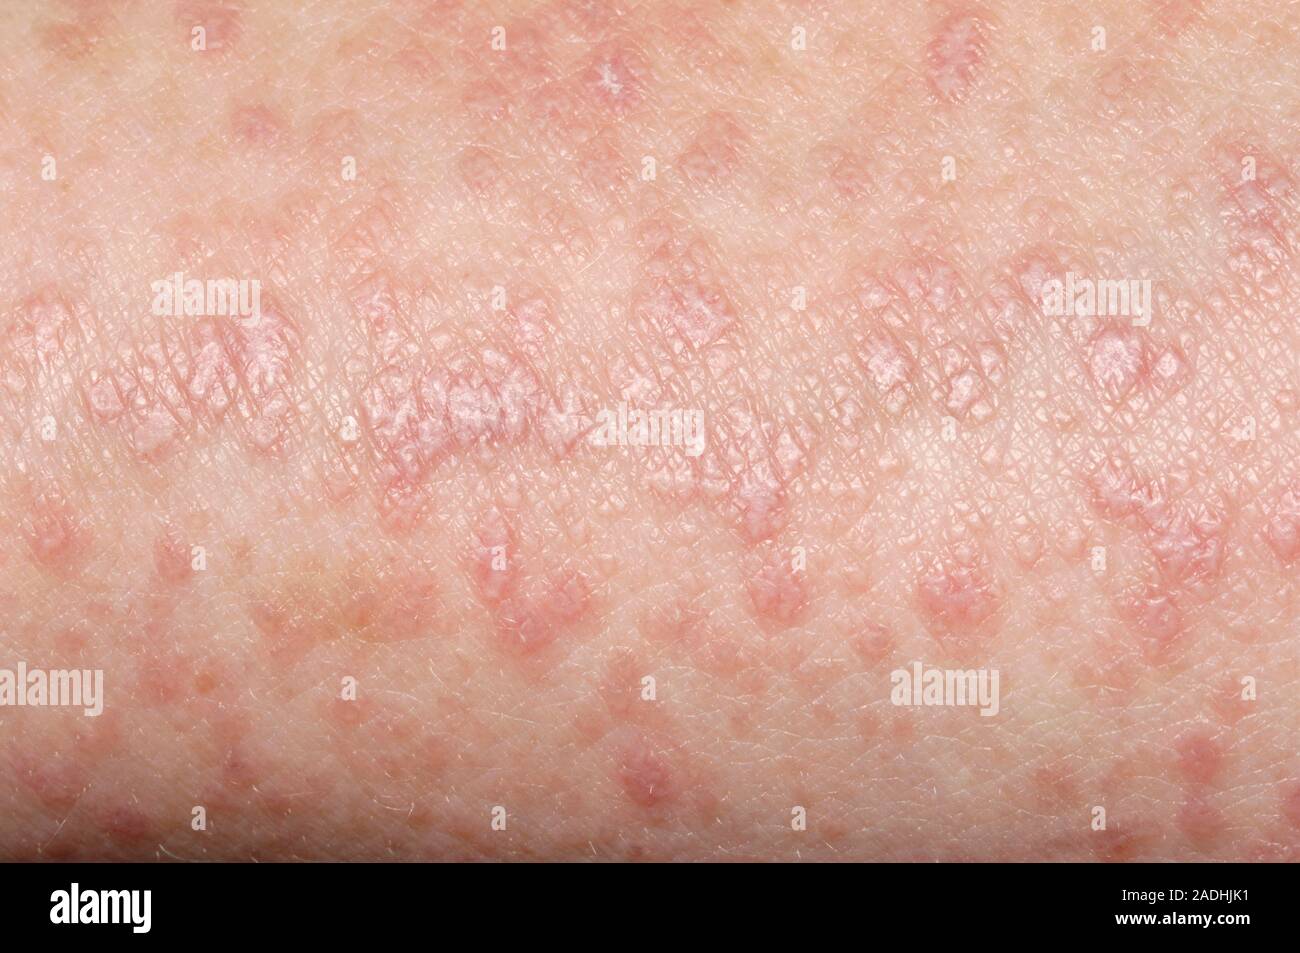 Le planus de lichen de la maladie. Close-up de la peau d'une femme ...